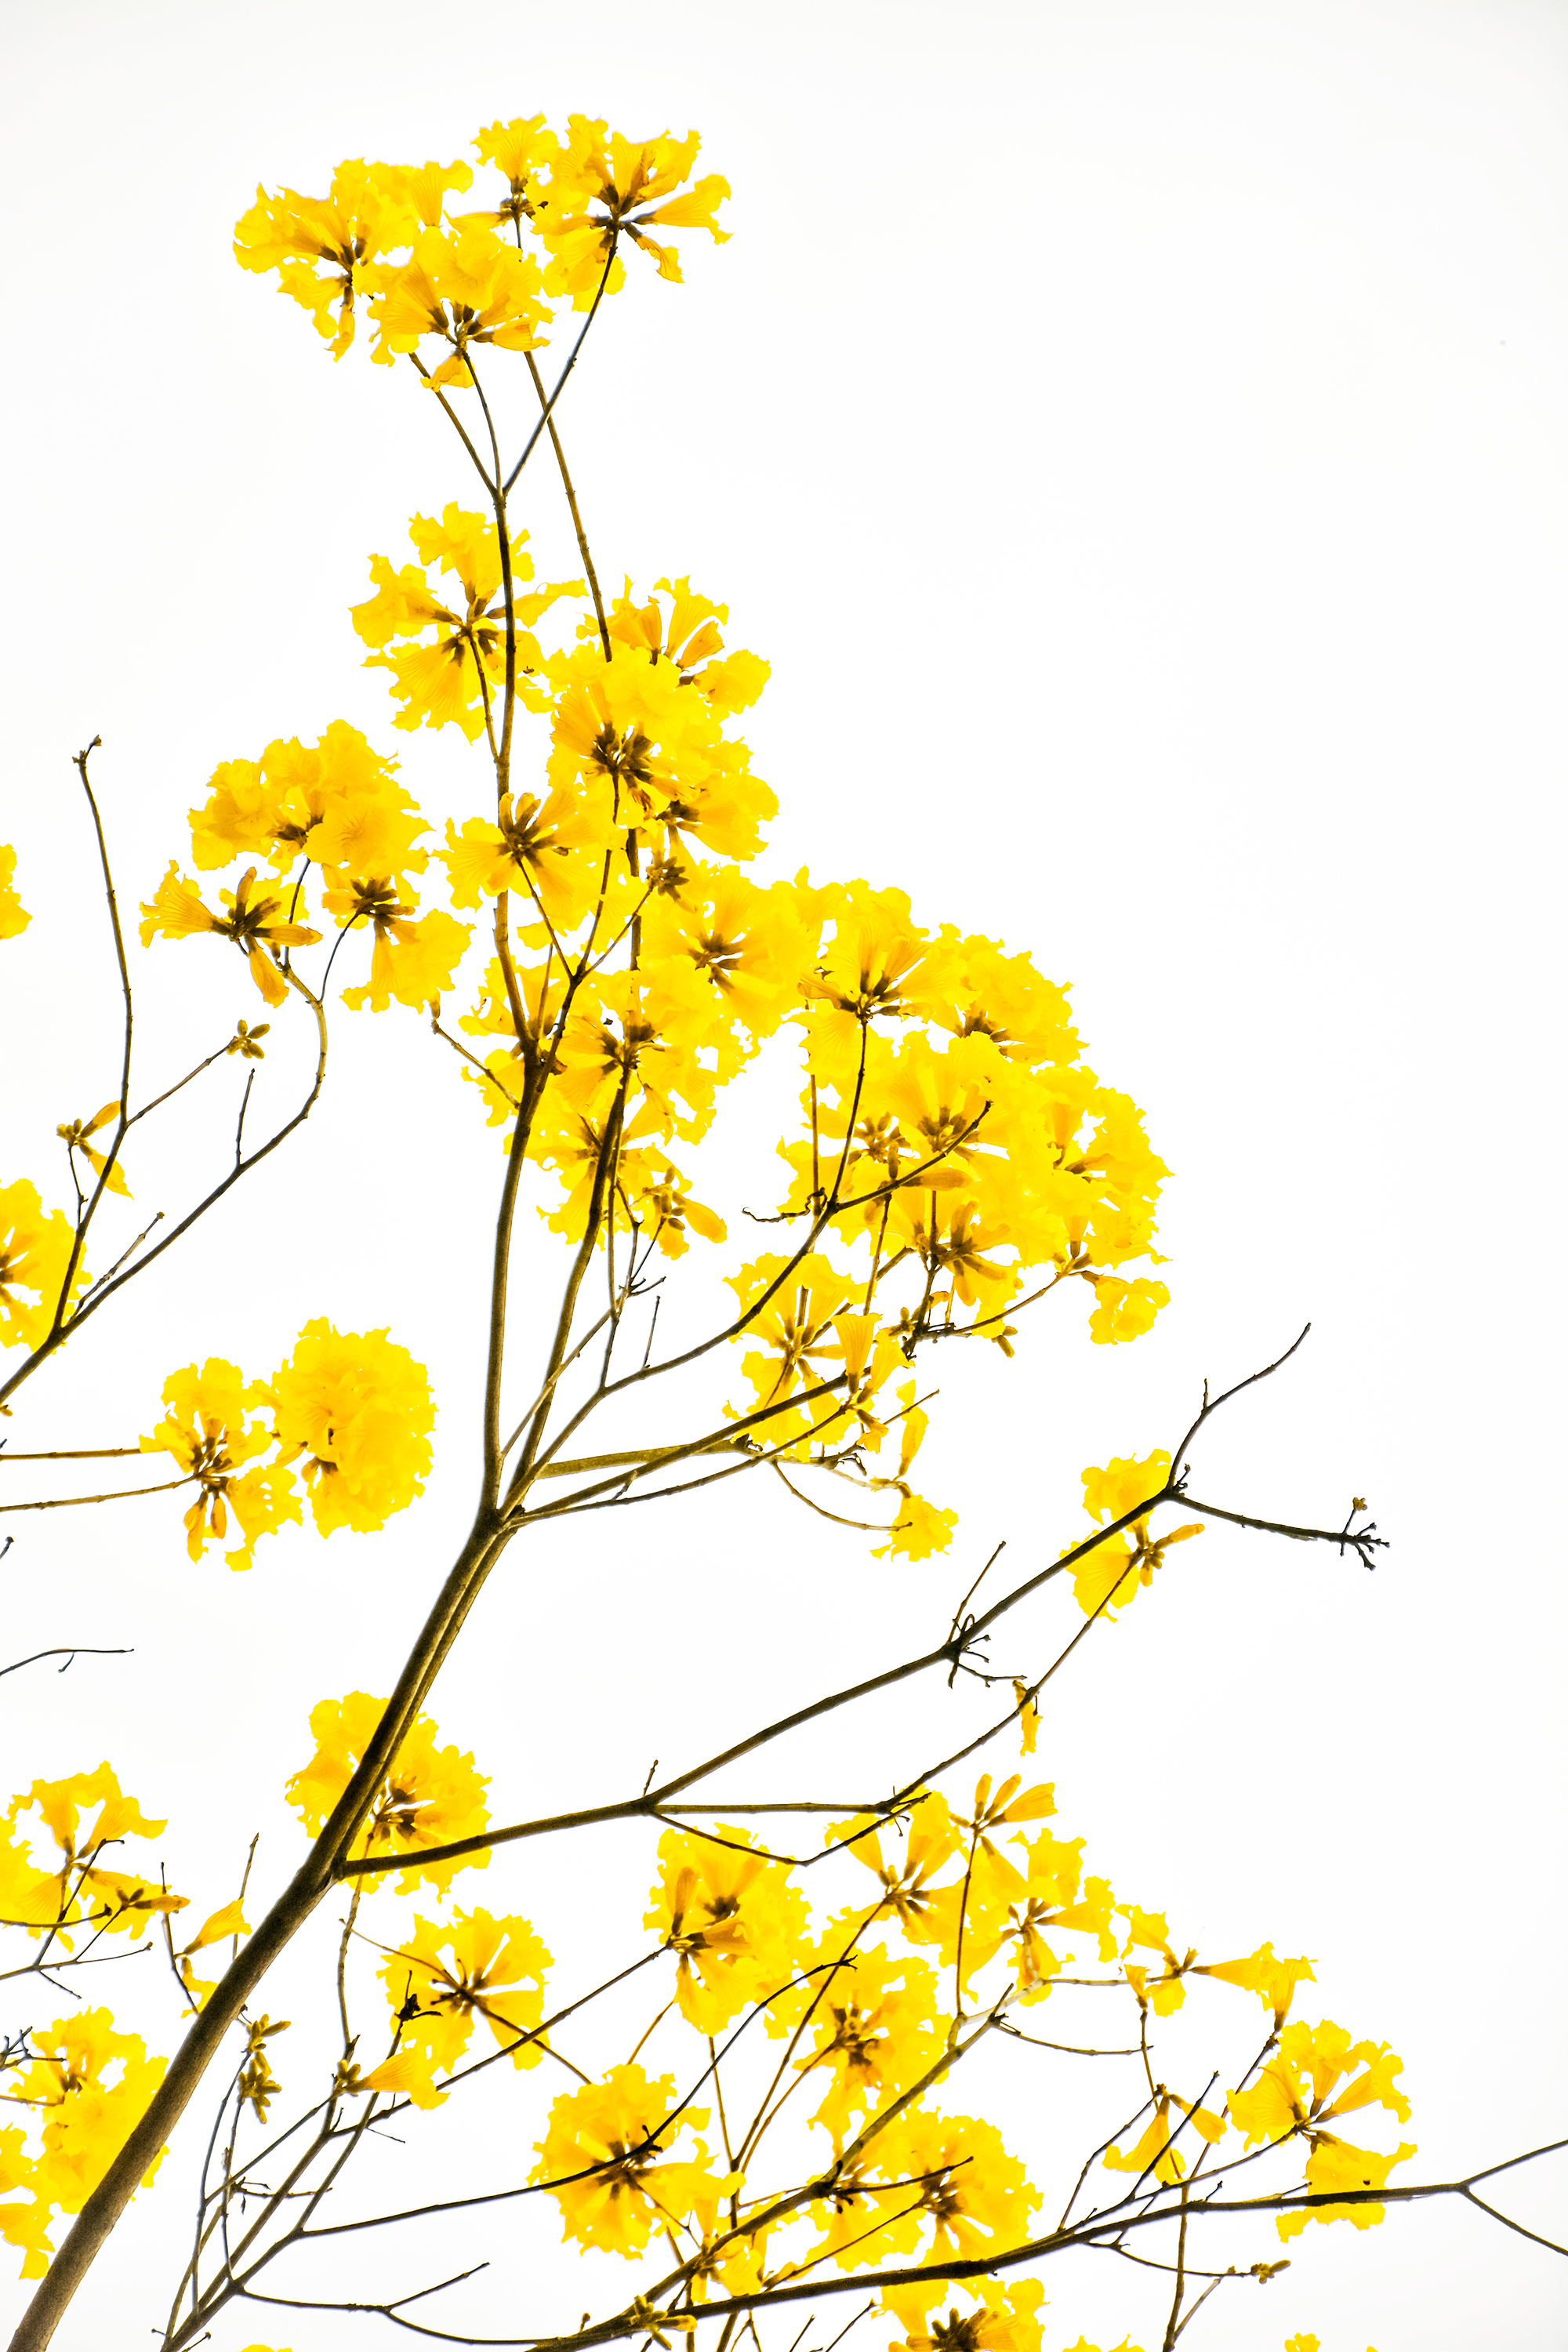 一枝黄花图片_植物根茎的一枝黄花图片大全 - 花卉网